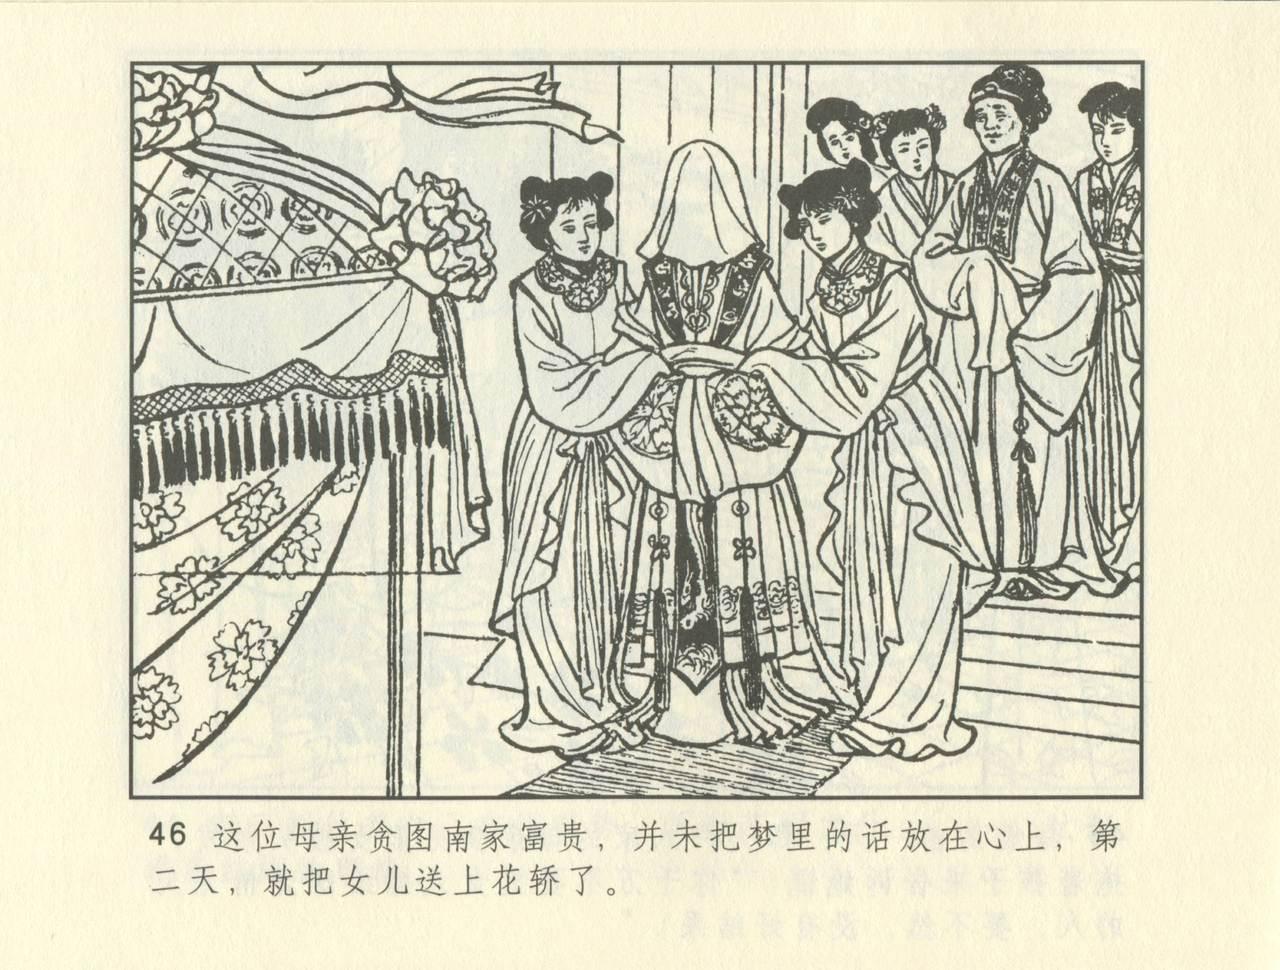 聊斋志异 张玮等绘 天津人民美术出版社 卷二十一 ~ 三十 255